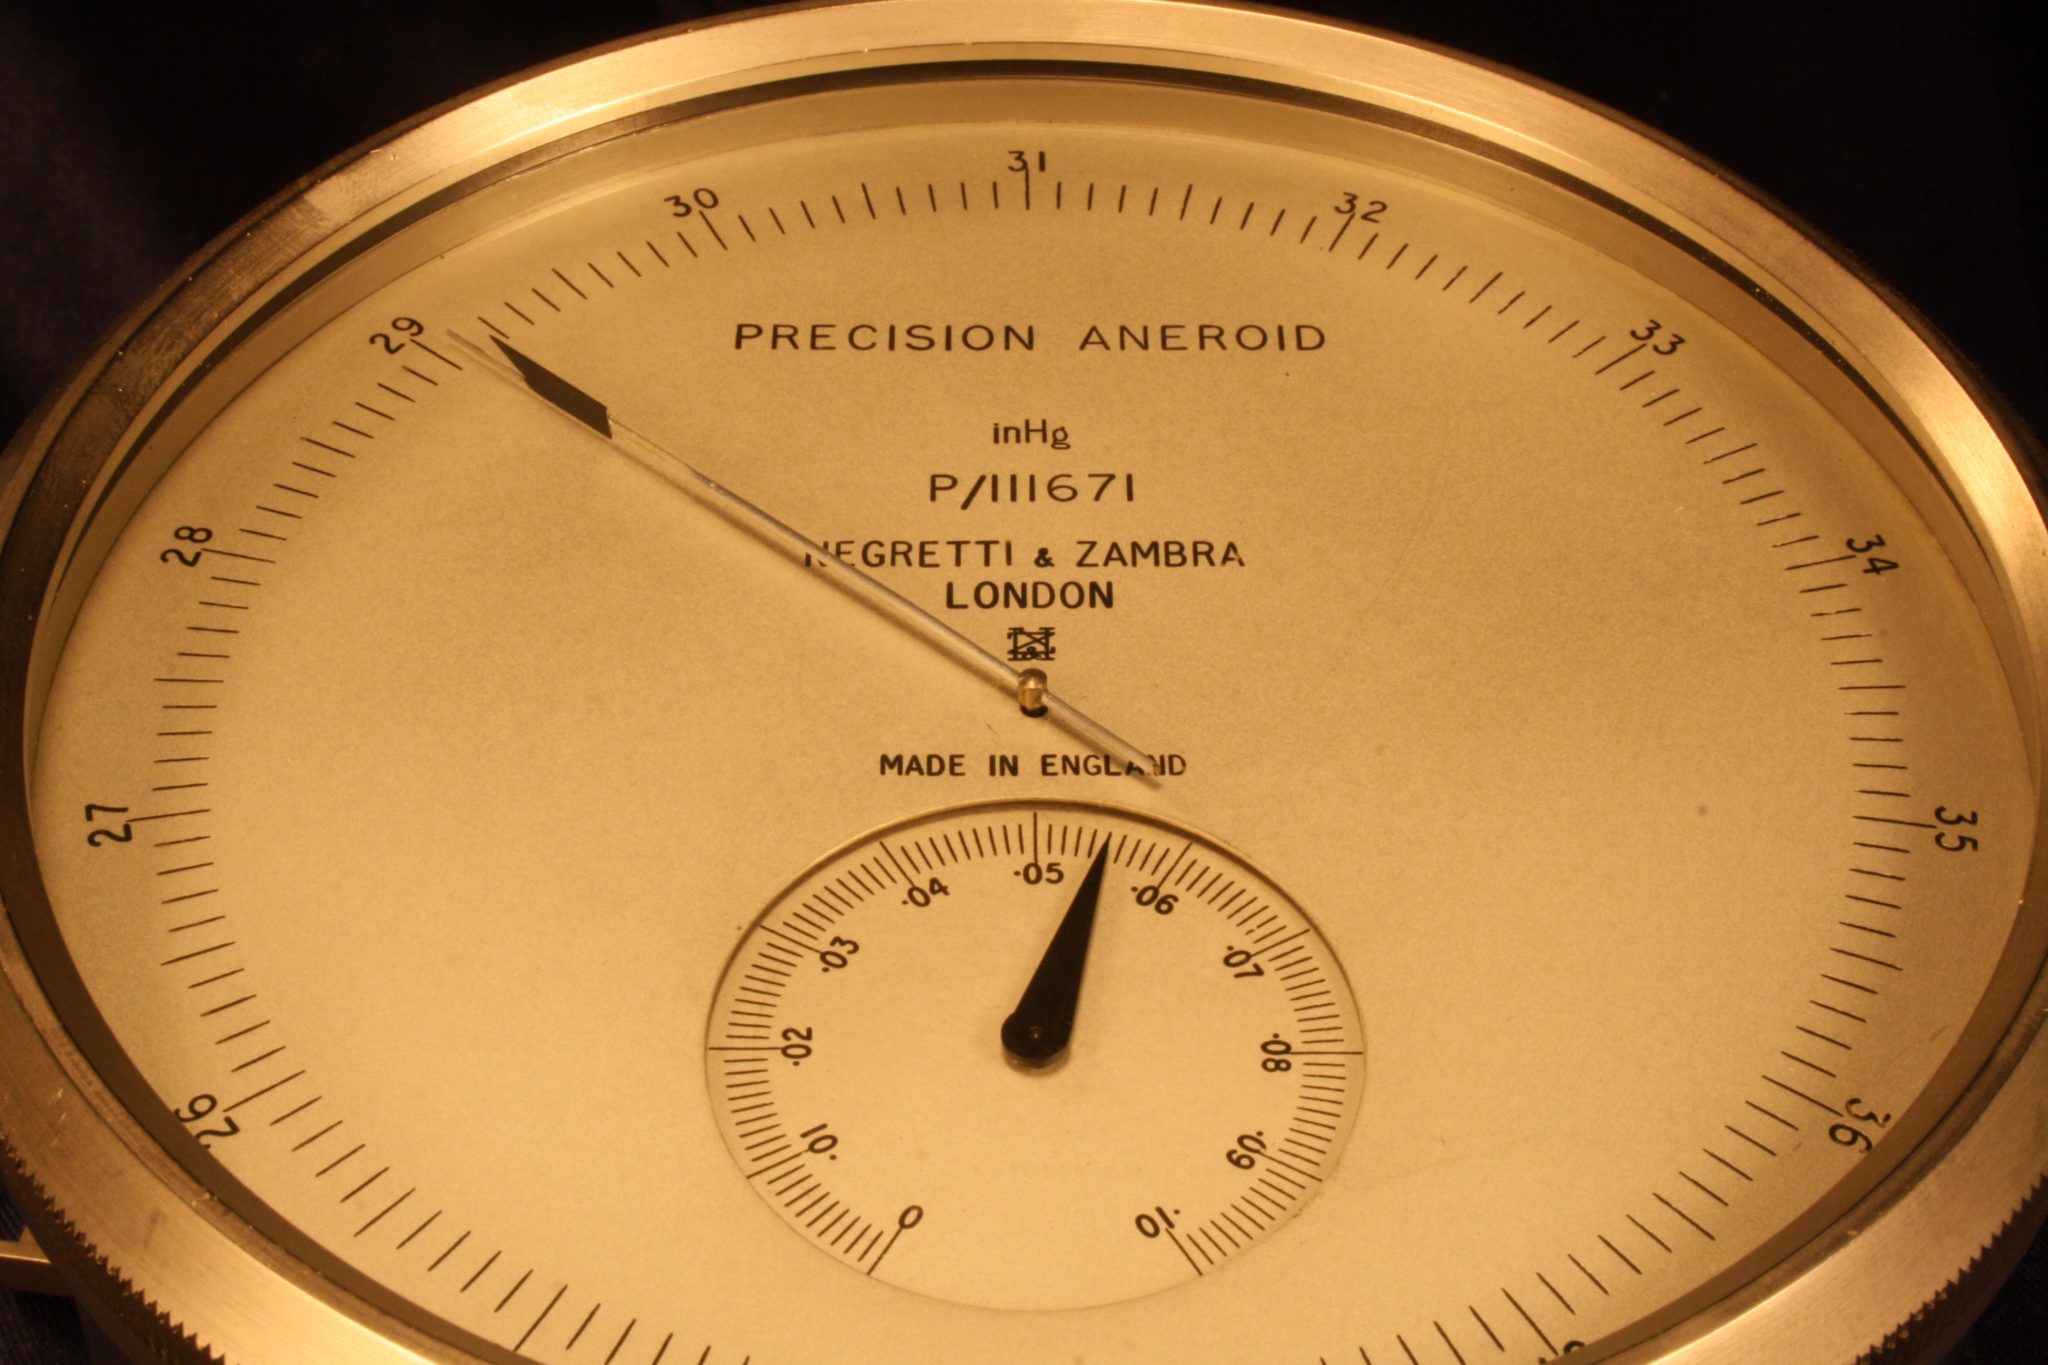 Image of Negretti & Zambra Precision Aneroid Surveying Barometer P/111671